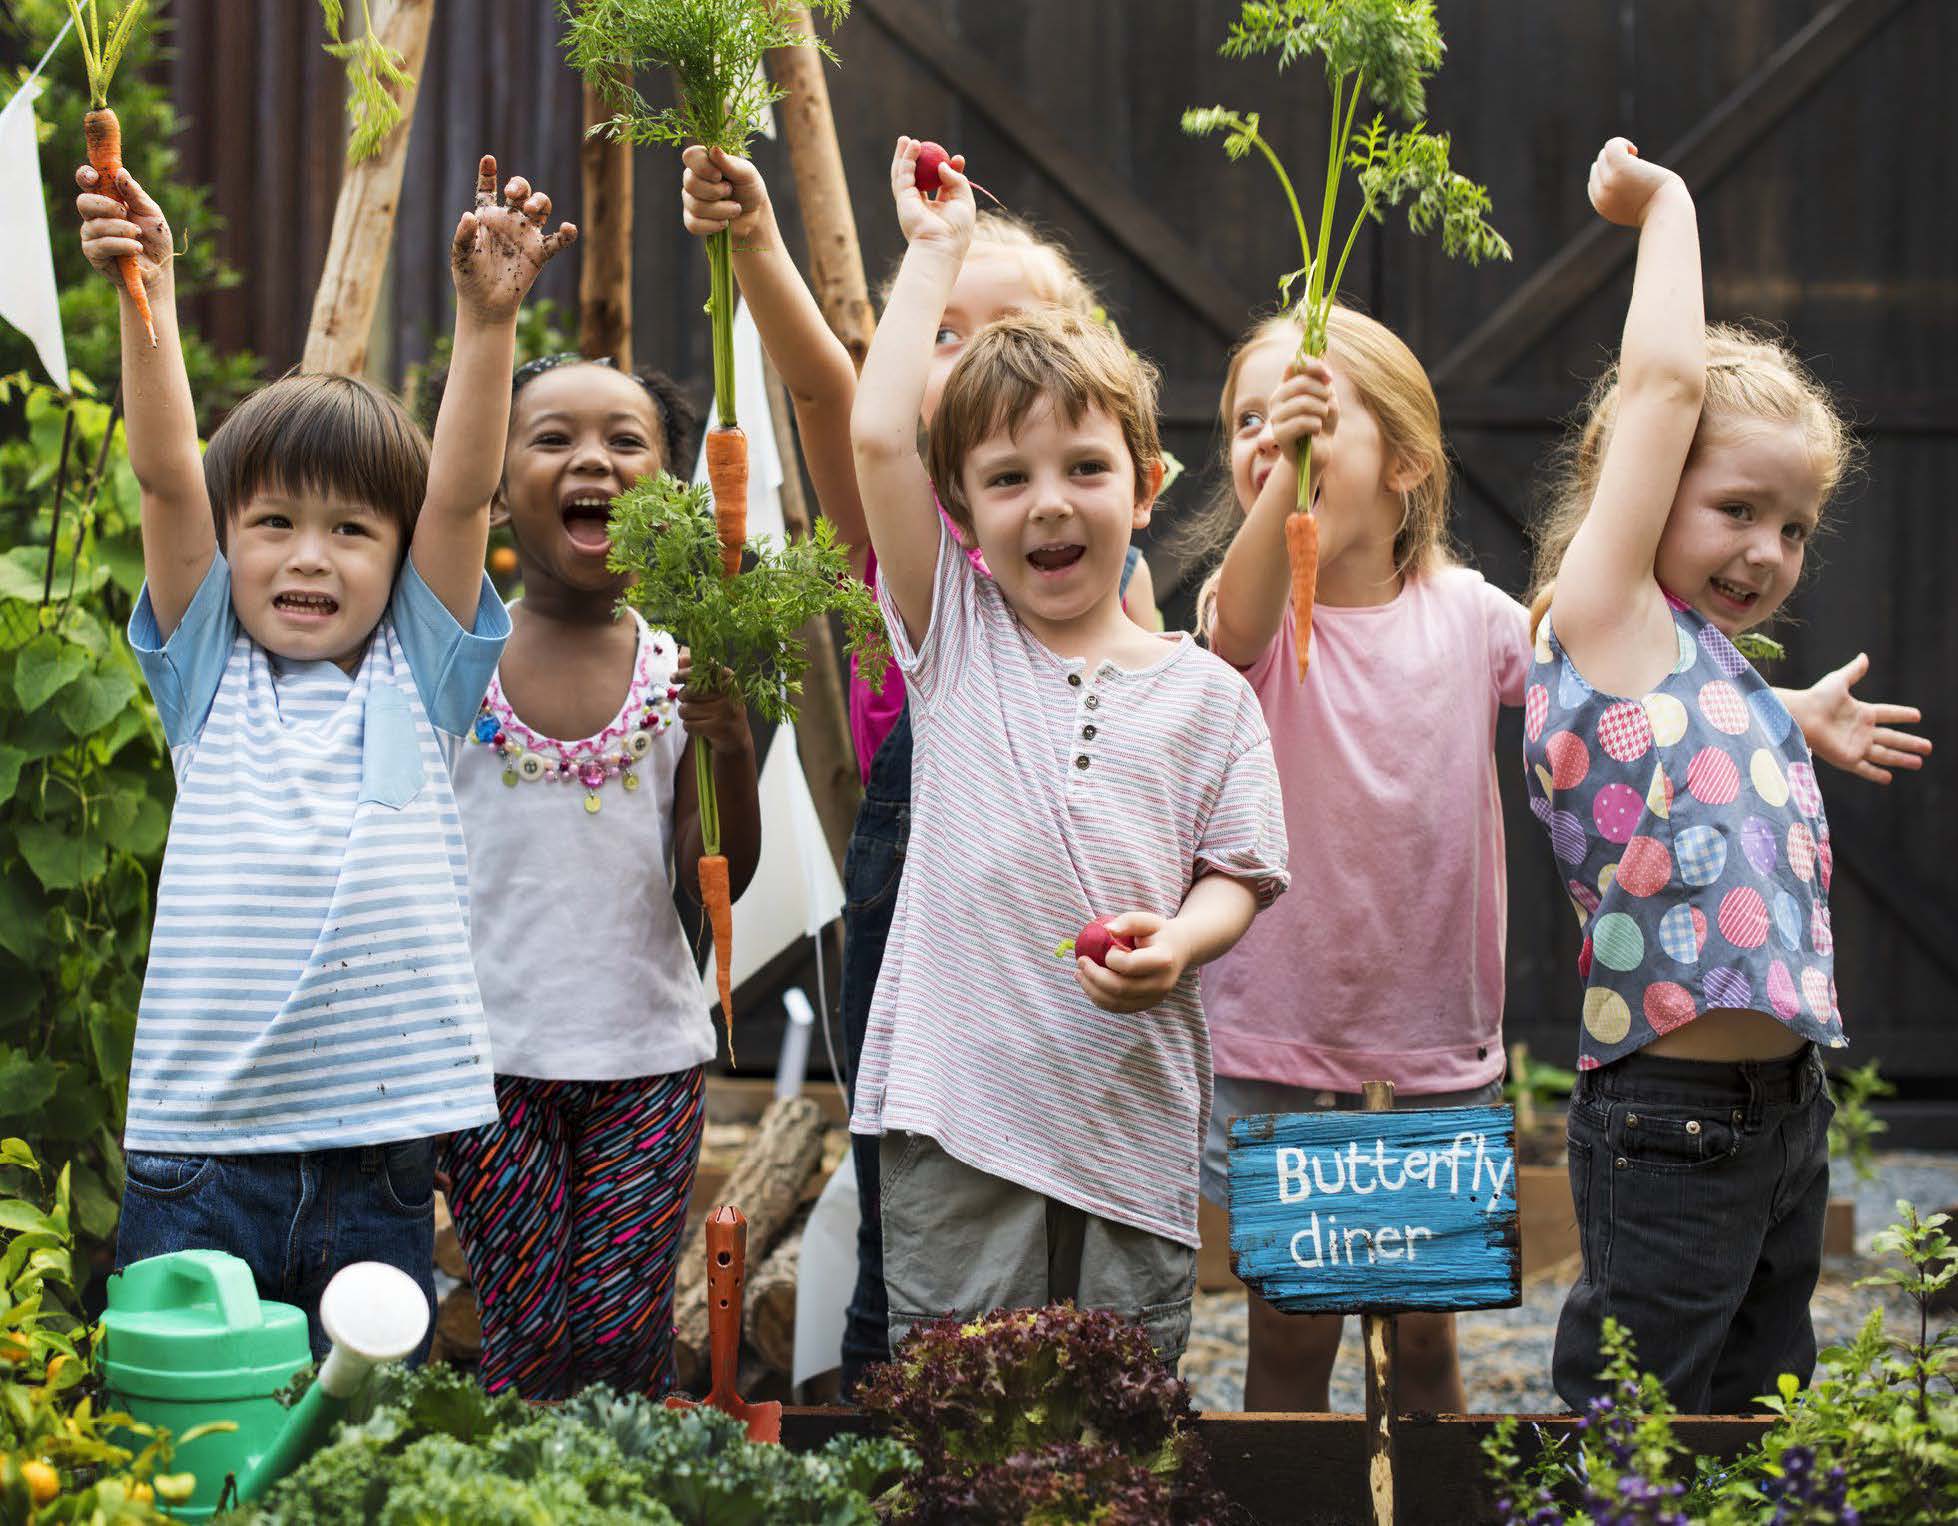 Children excited in a garden